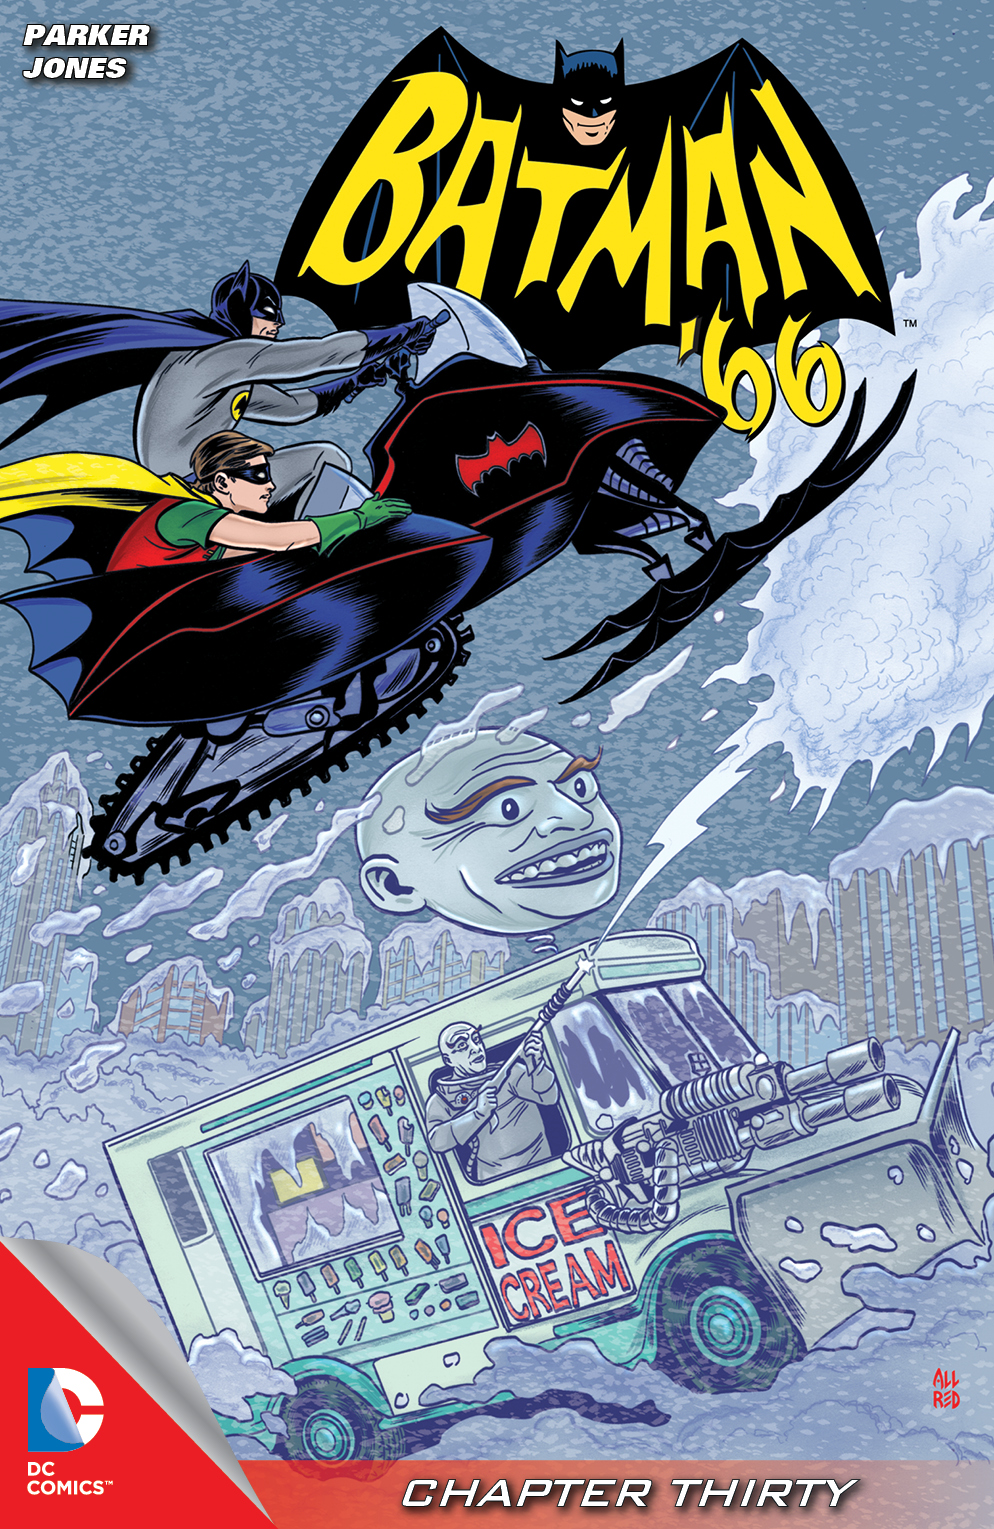 Batman '66 #30 preview images